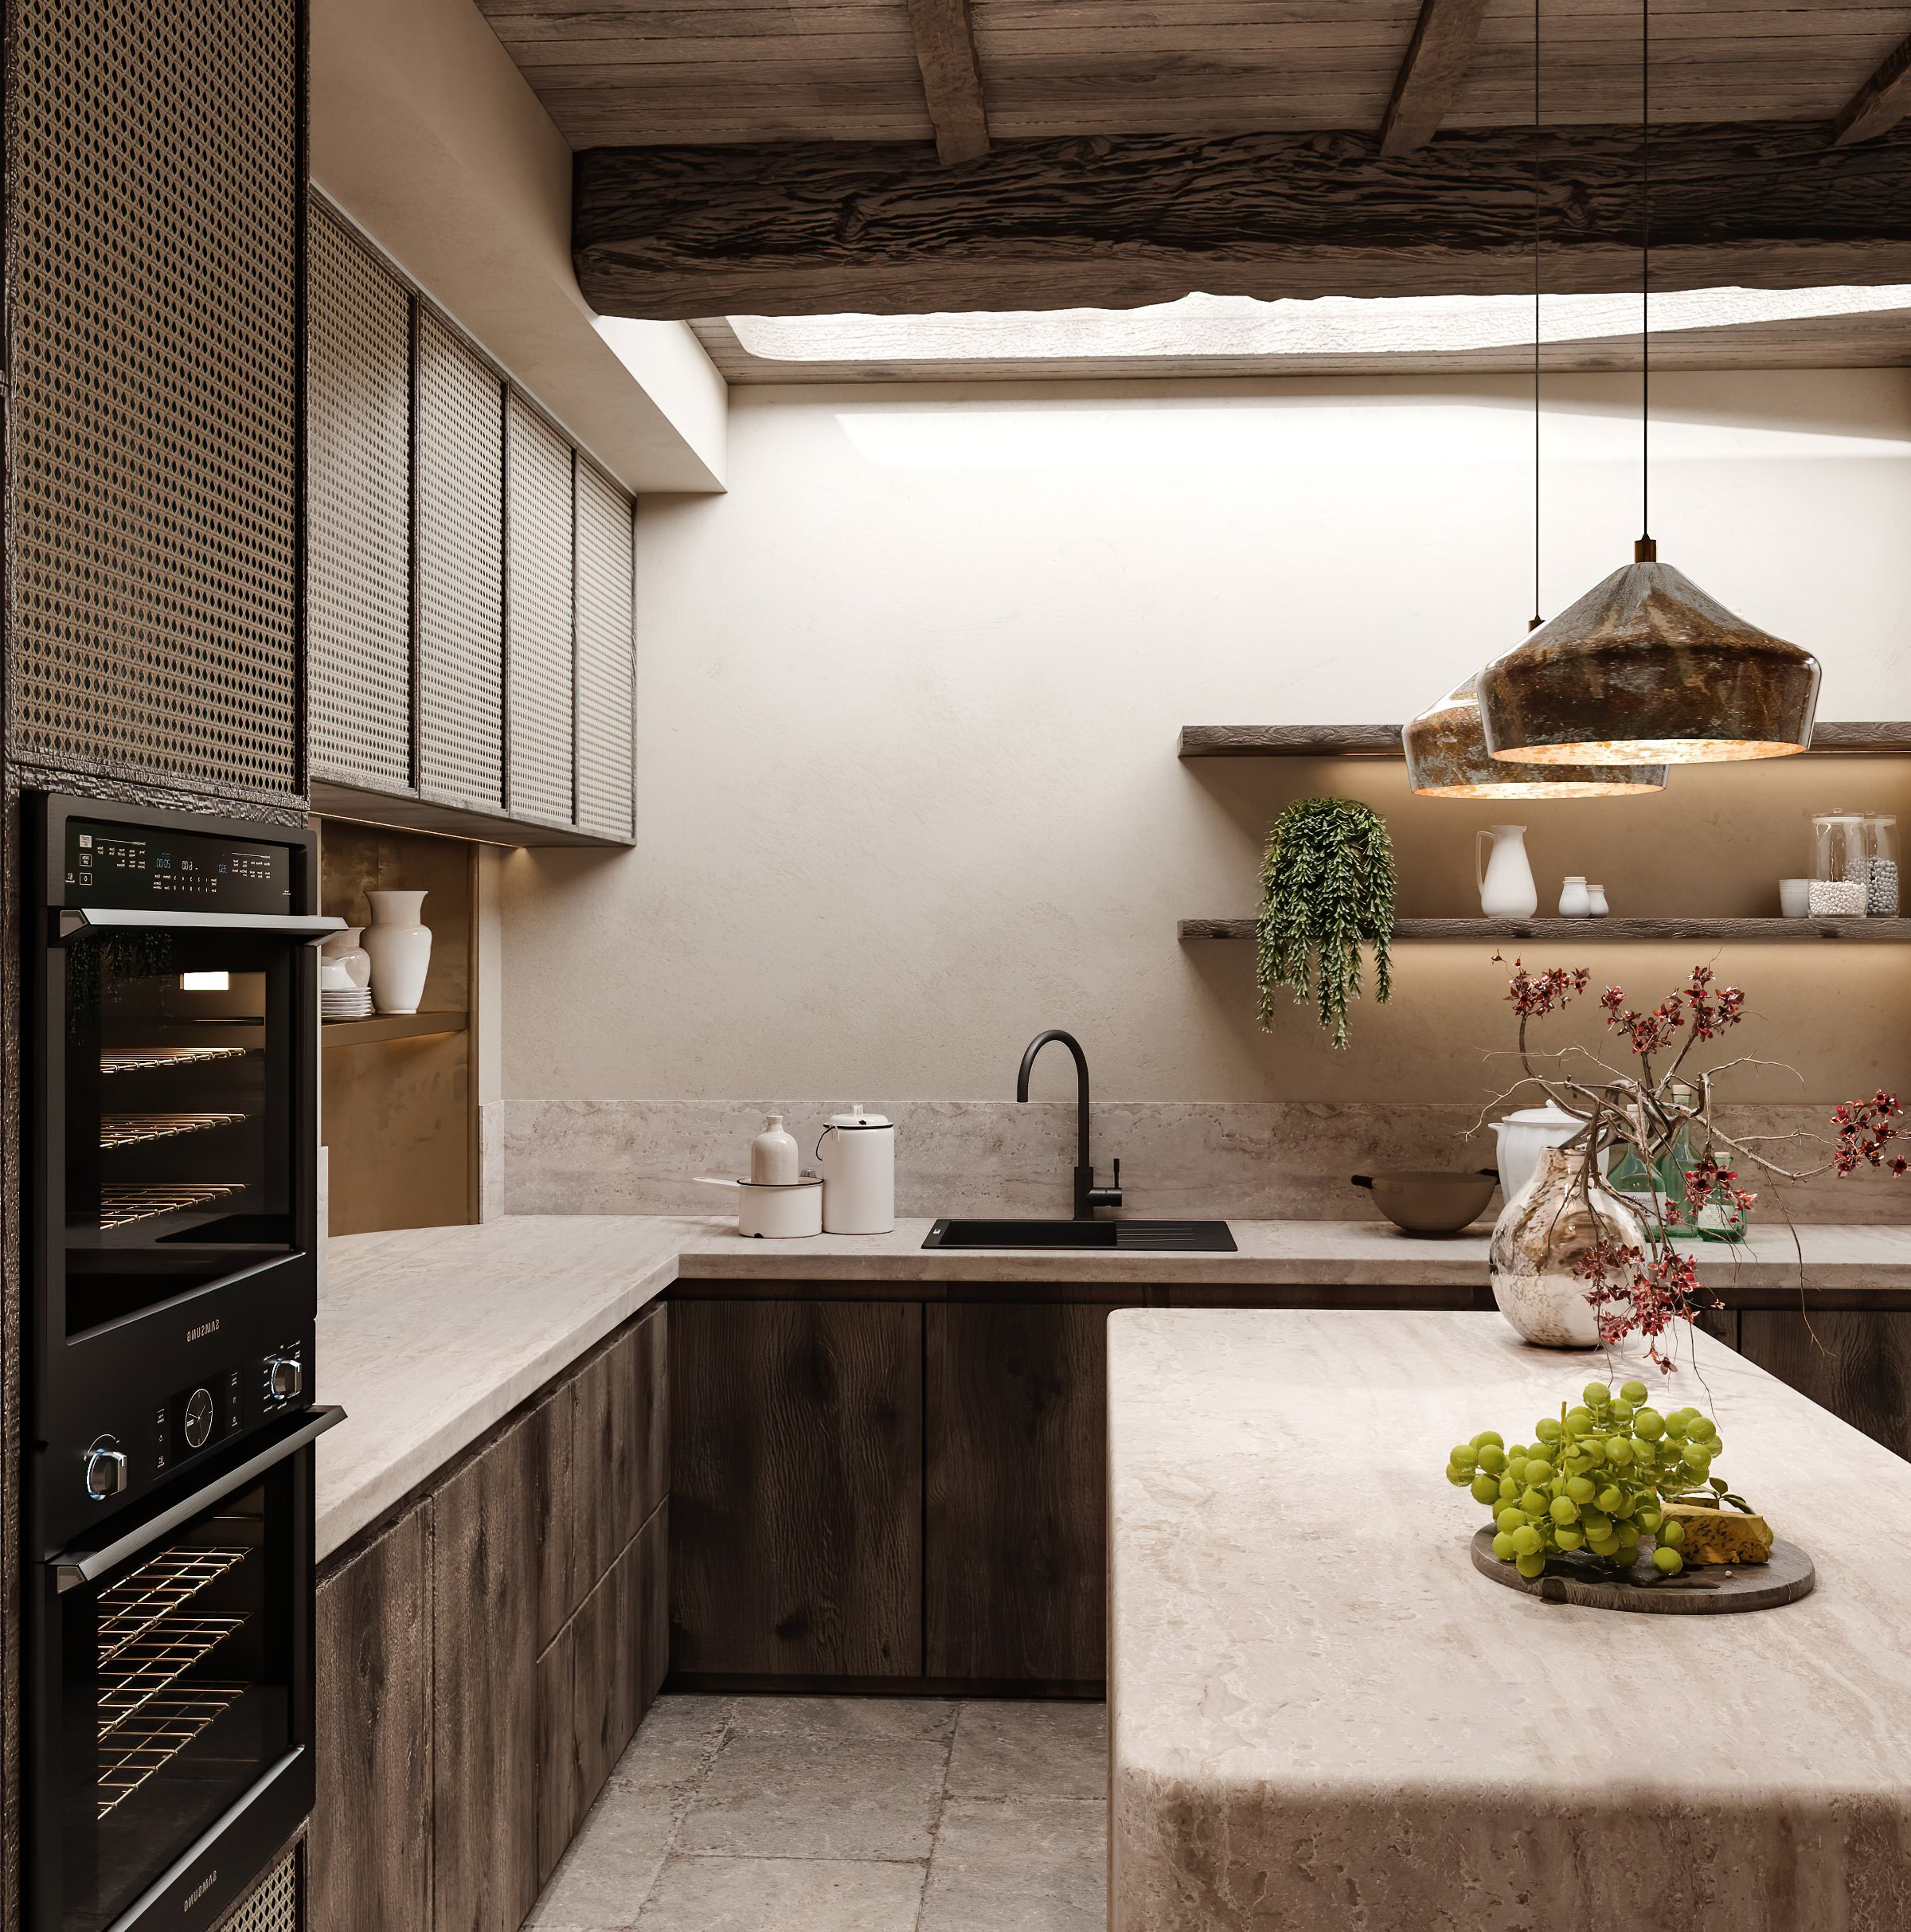 侘寂風廚房設計出自然而樸素的美